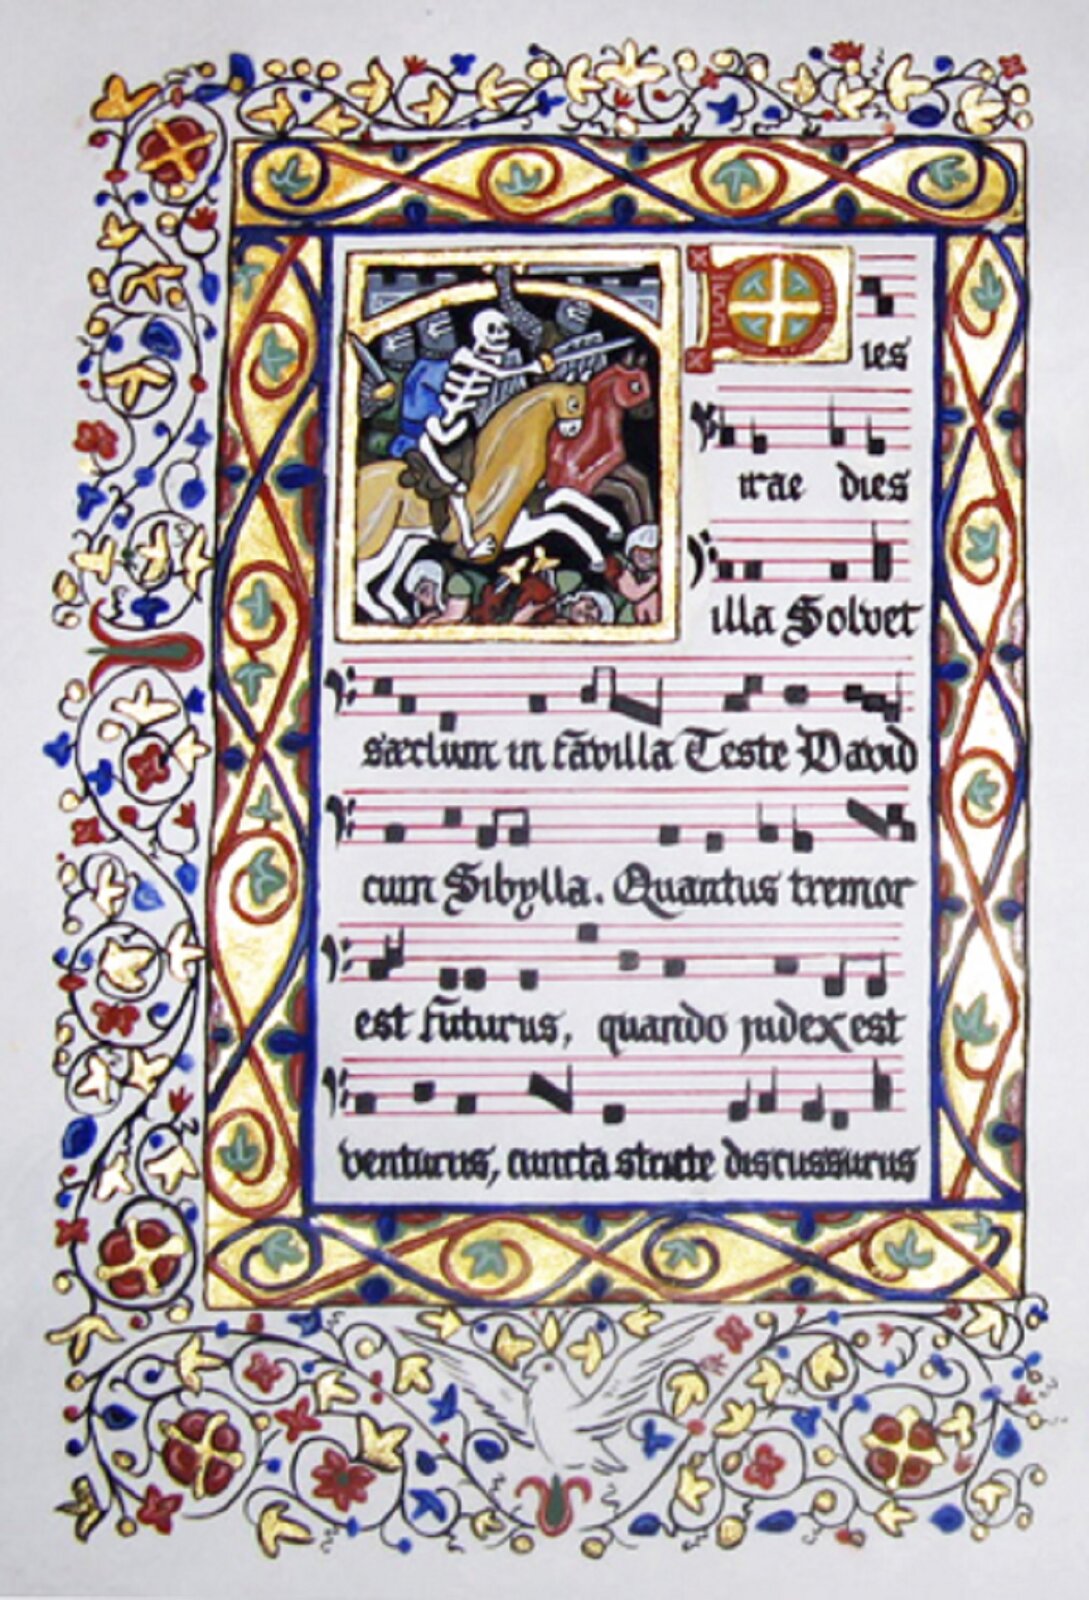 Zapis nutowy sekwencji „Dies irae”. Kolorowa ilustracja pochodząca z chorałów gregoriańskich. Zawiera obrazek przedstawiający szkielet rycerza jadącego na koniu.